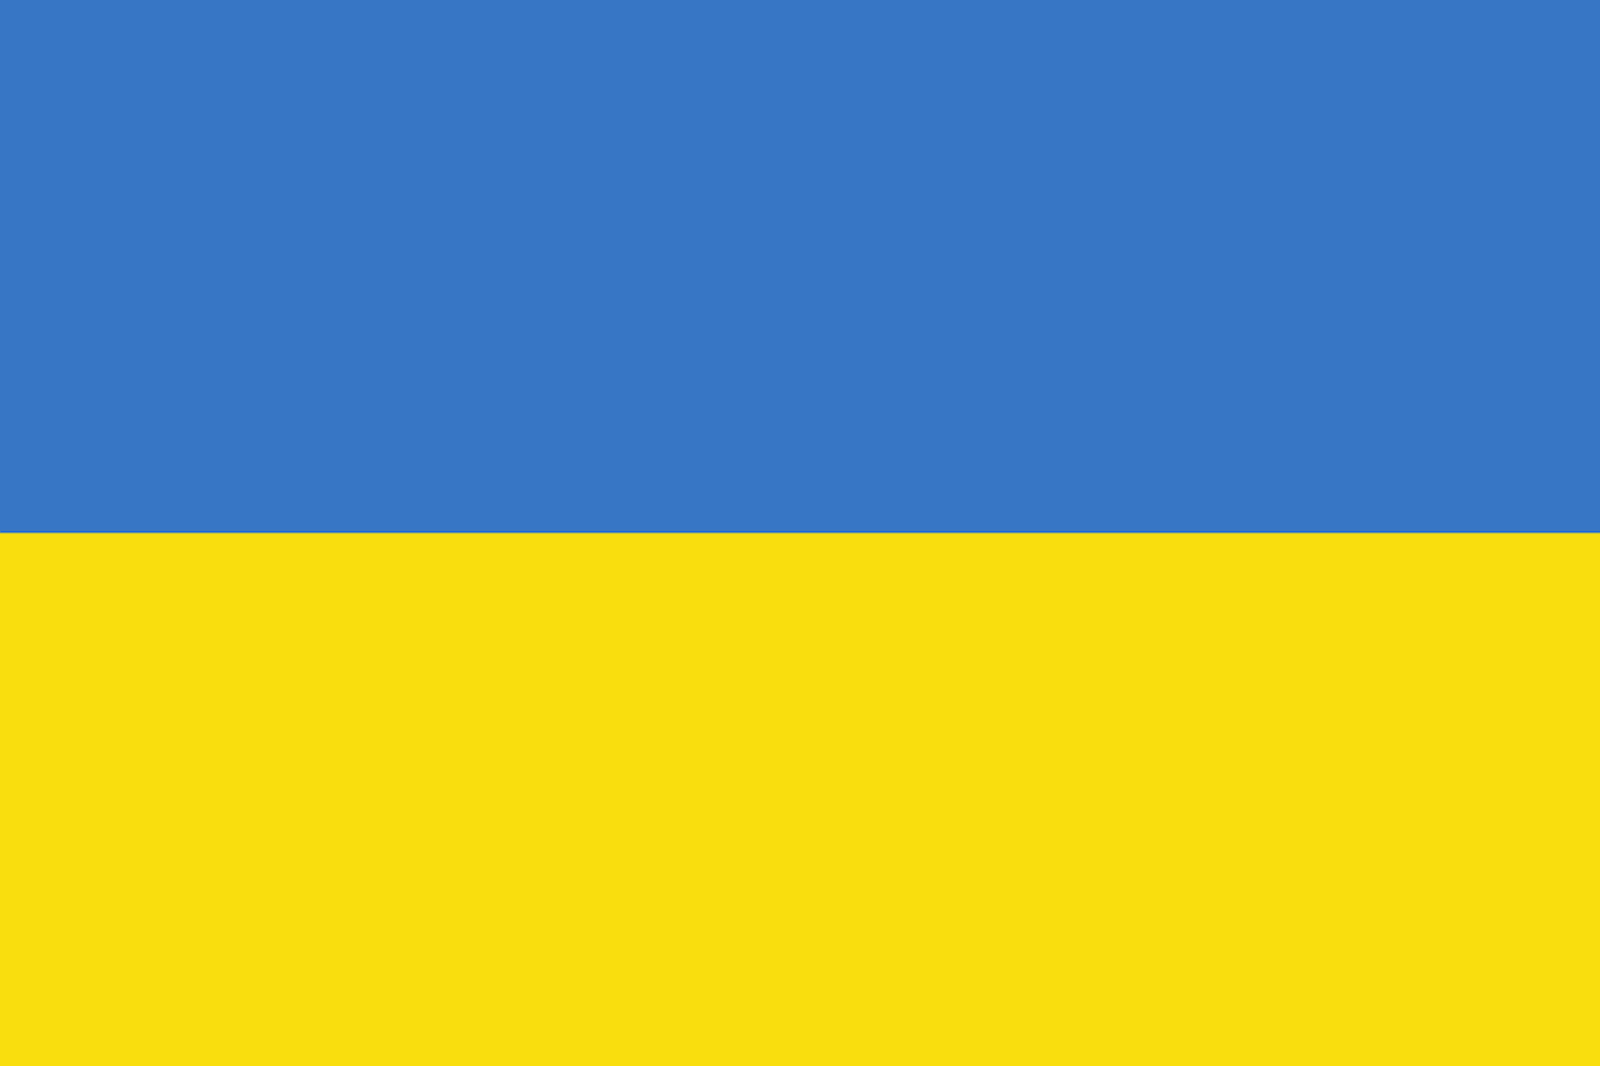 Die ukrainische Flagge: Blau-gelb